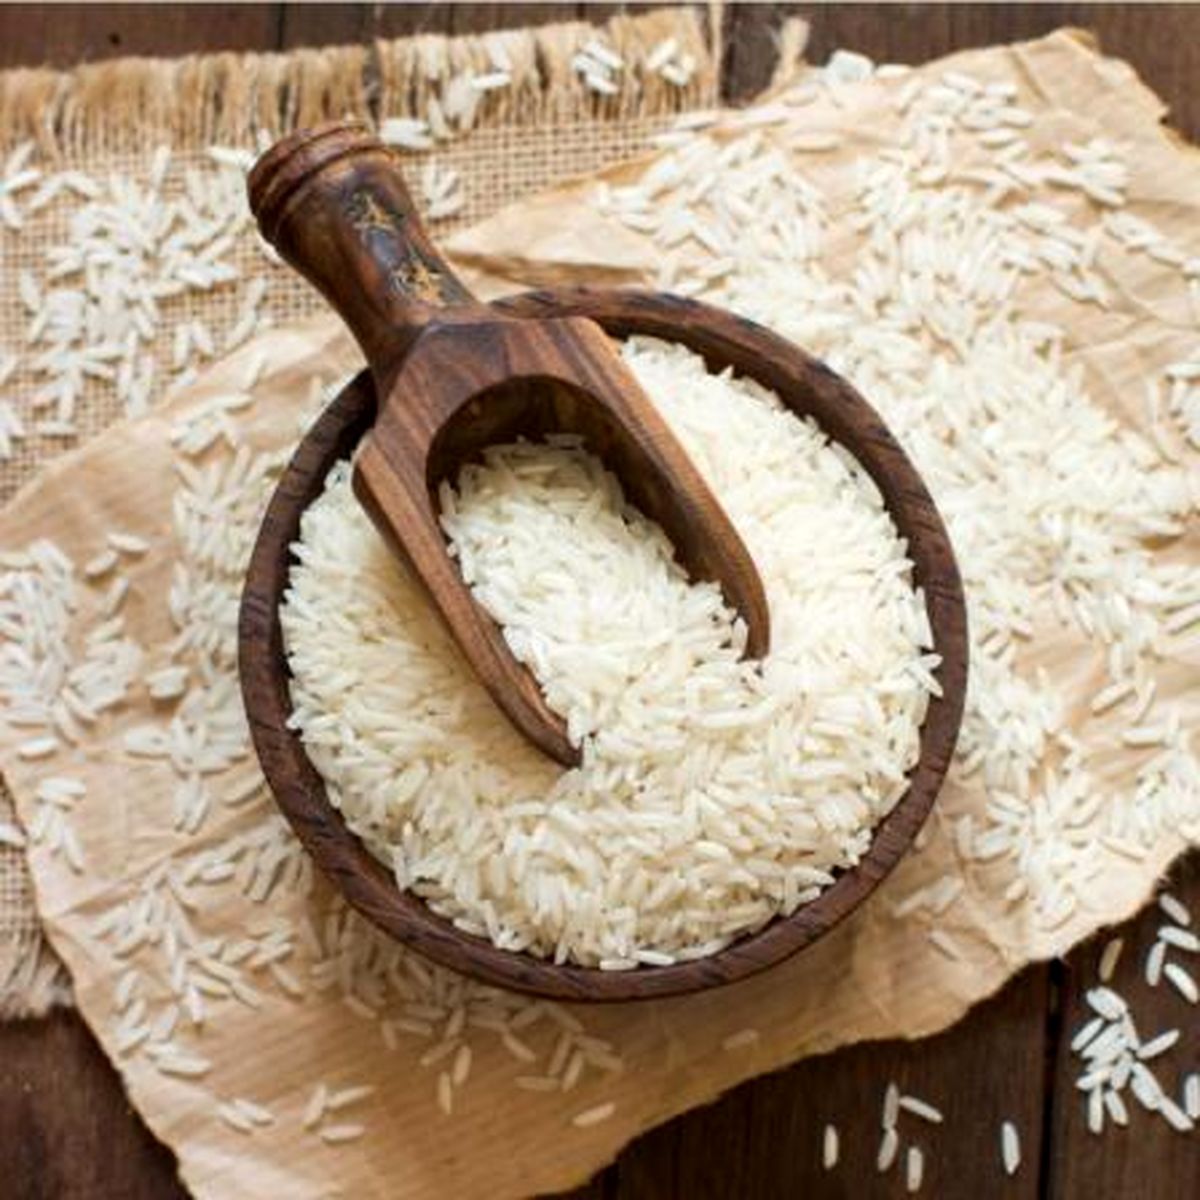 کاهش ۱۰ هزار تومانی قیمت هر کیلو برنج ایرانی  قیمت برنج شمال بین ۷۰ تا ۱۱۰ هزار تومان است